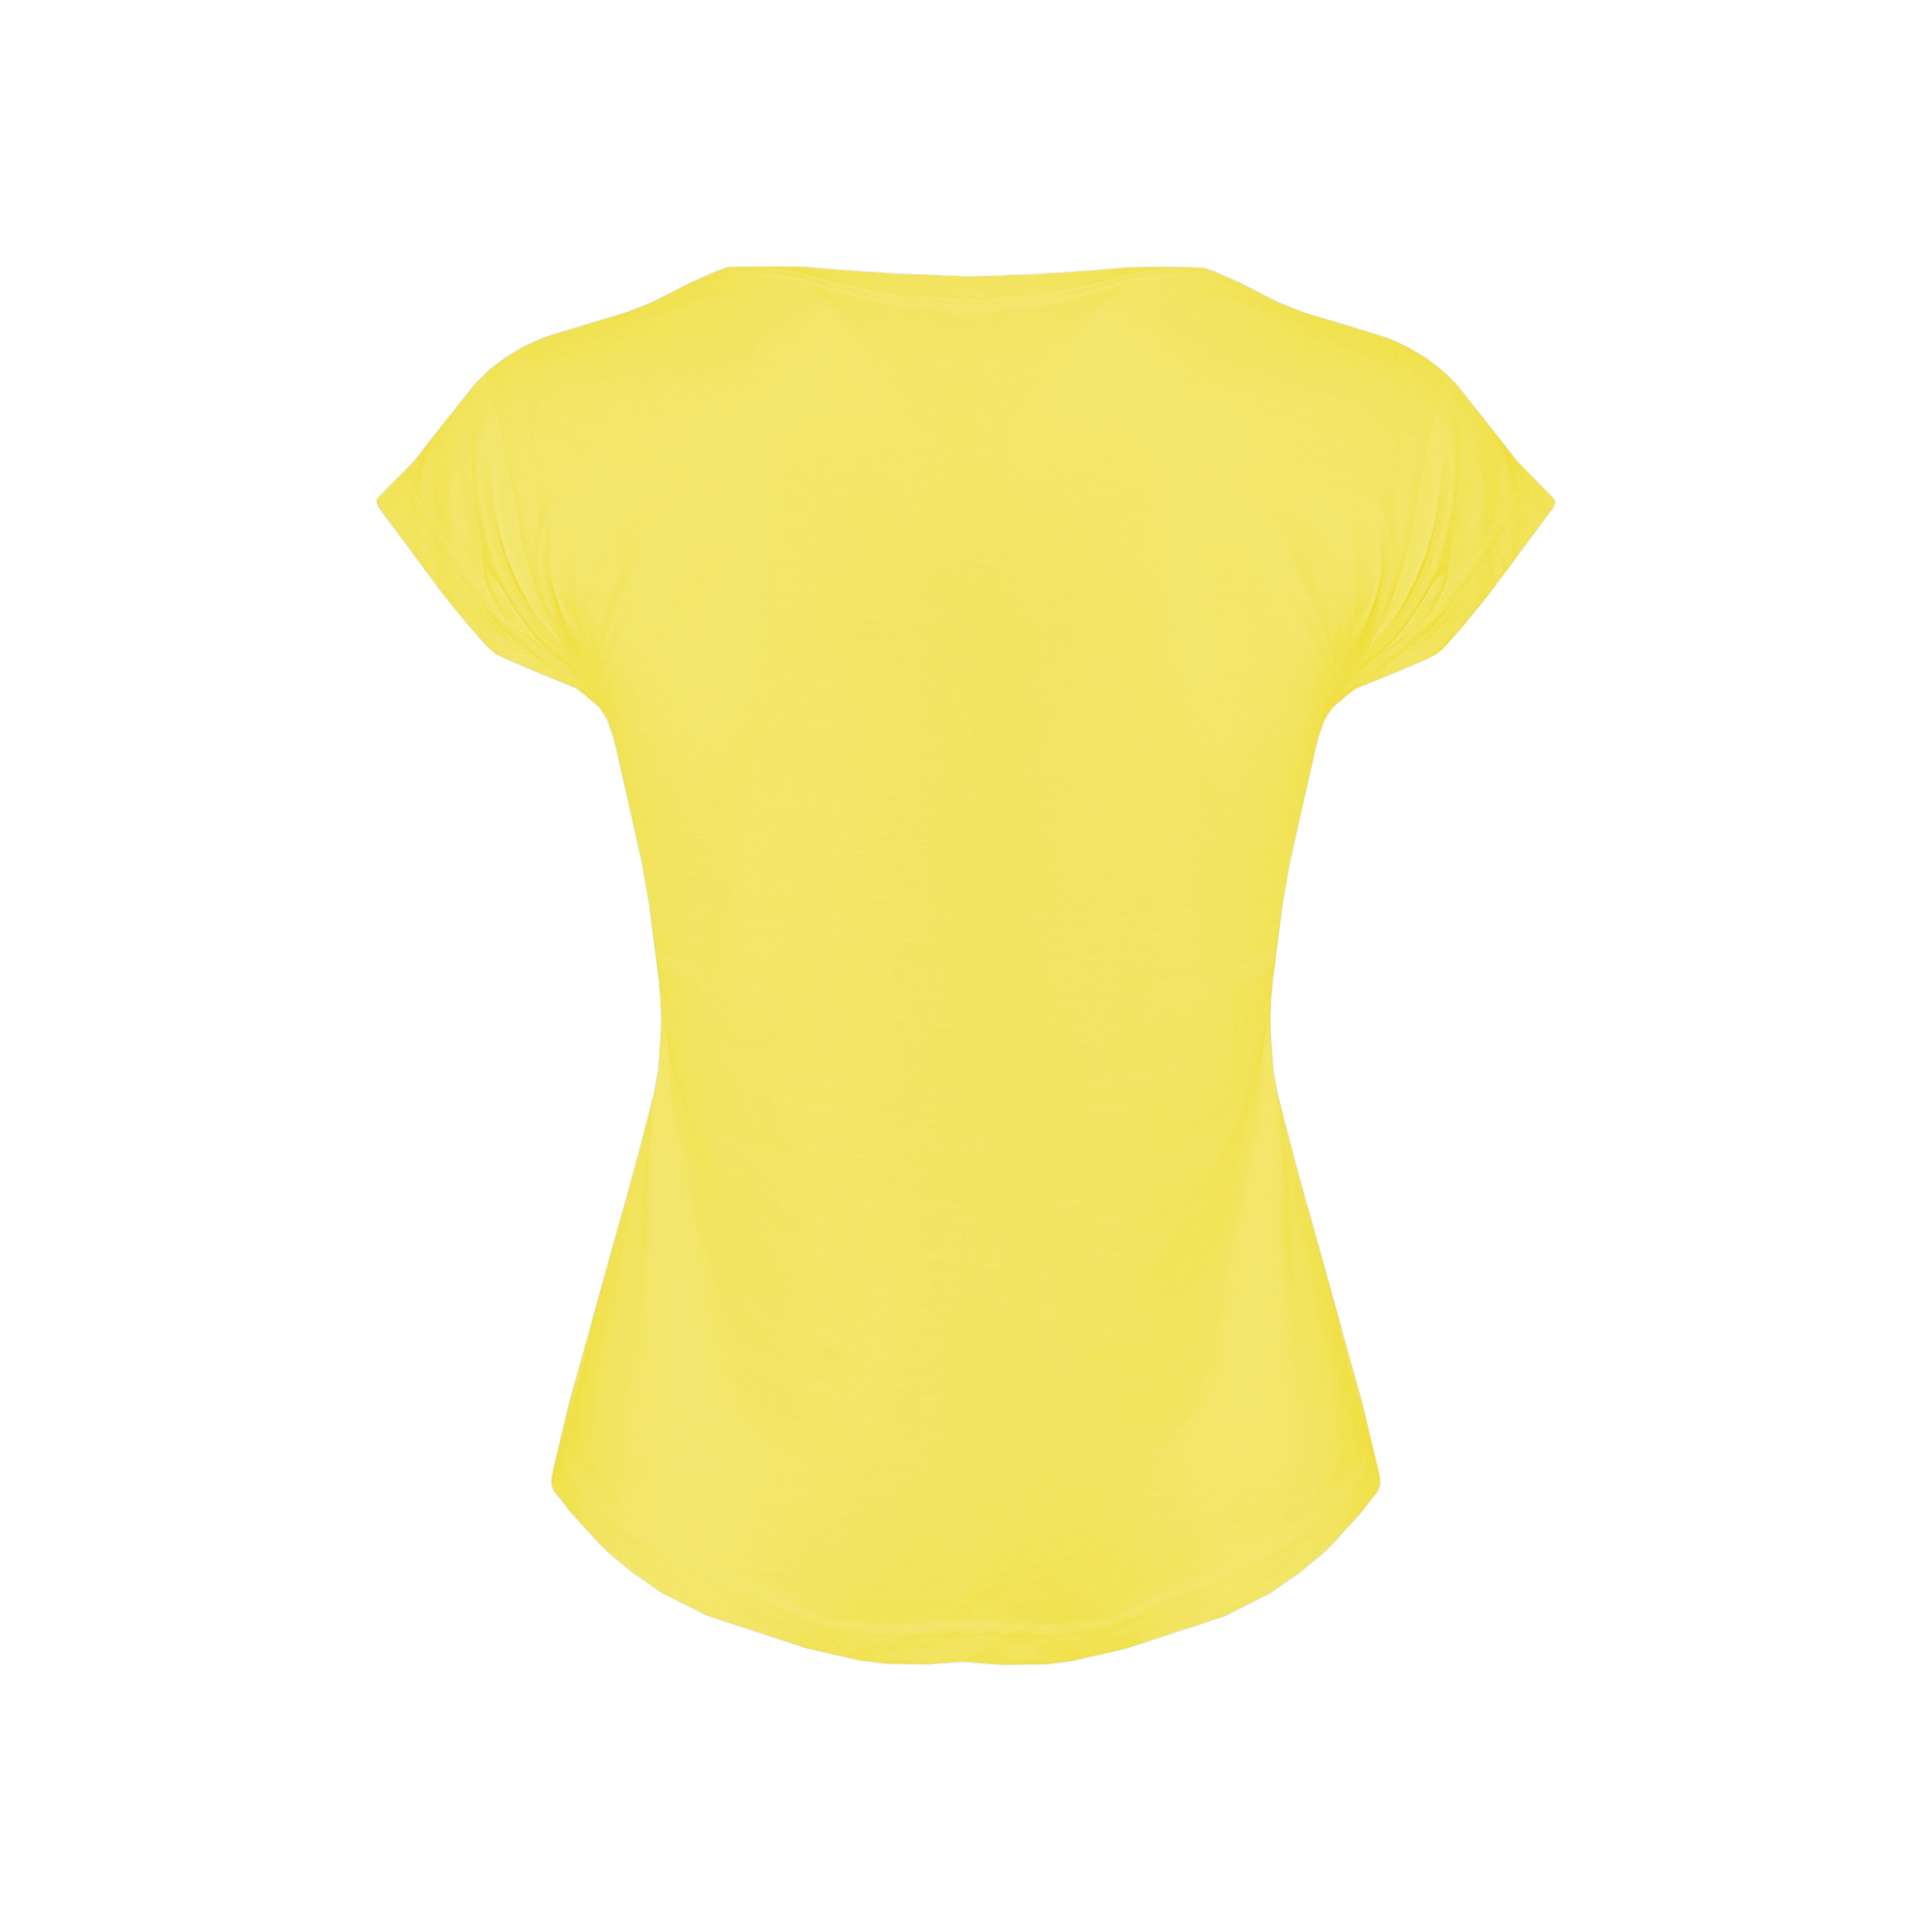 ست تی شرت و شلوارک زنانه افراتین طرح ببعی کد 6539 رنگ زرد -  - 4